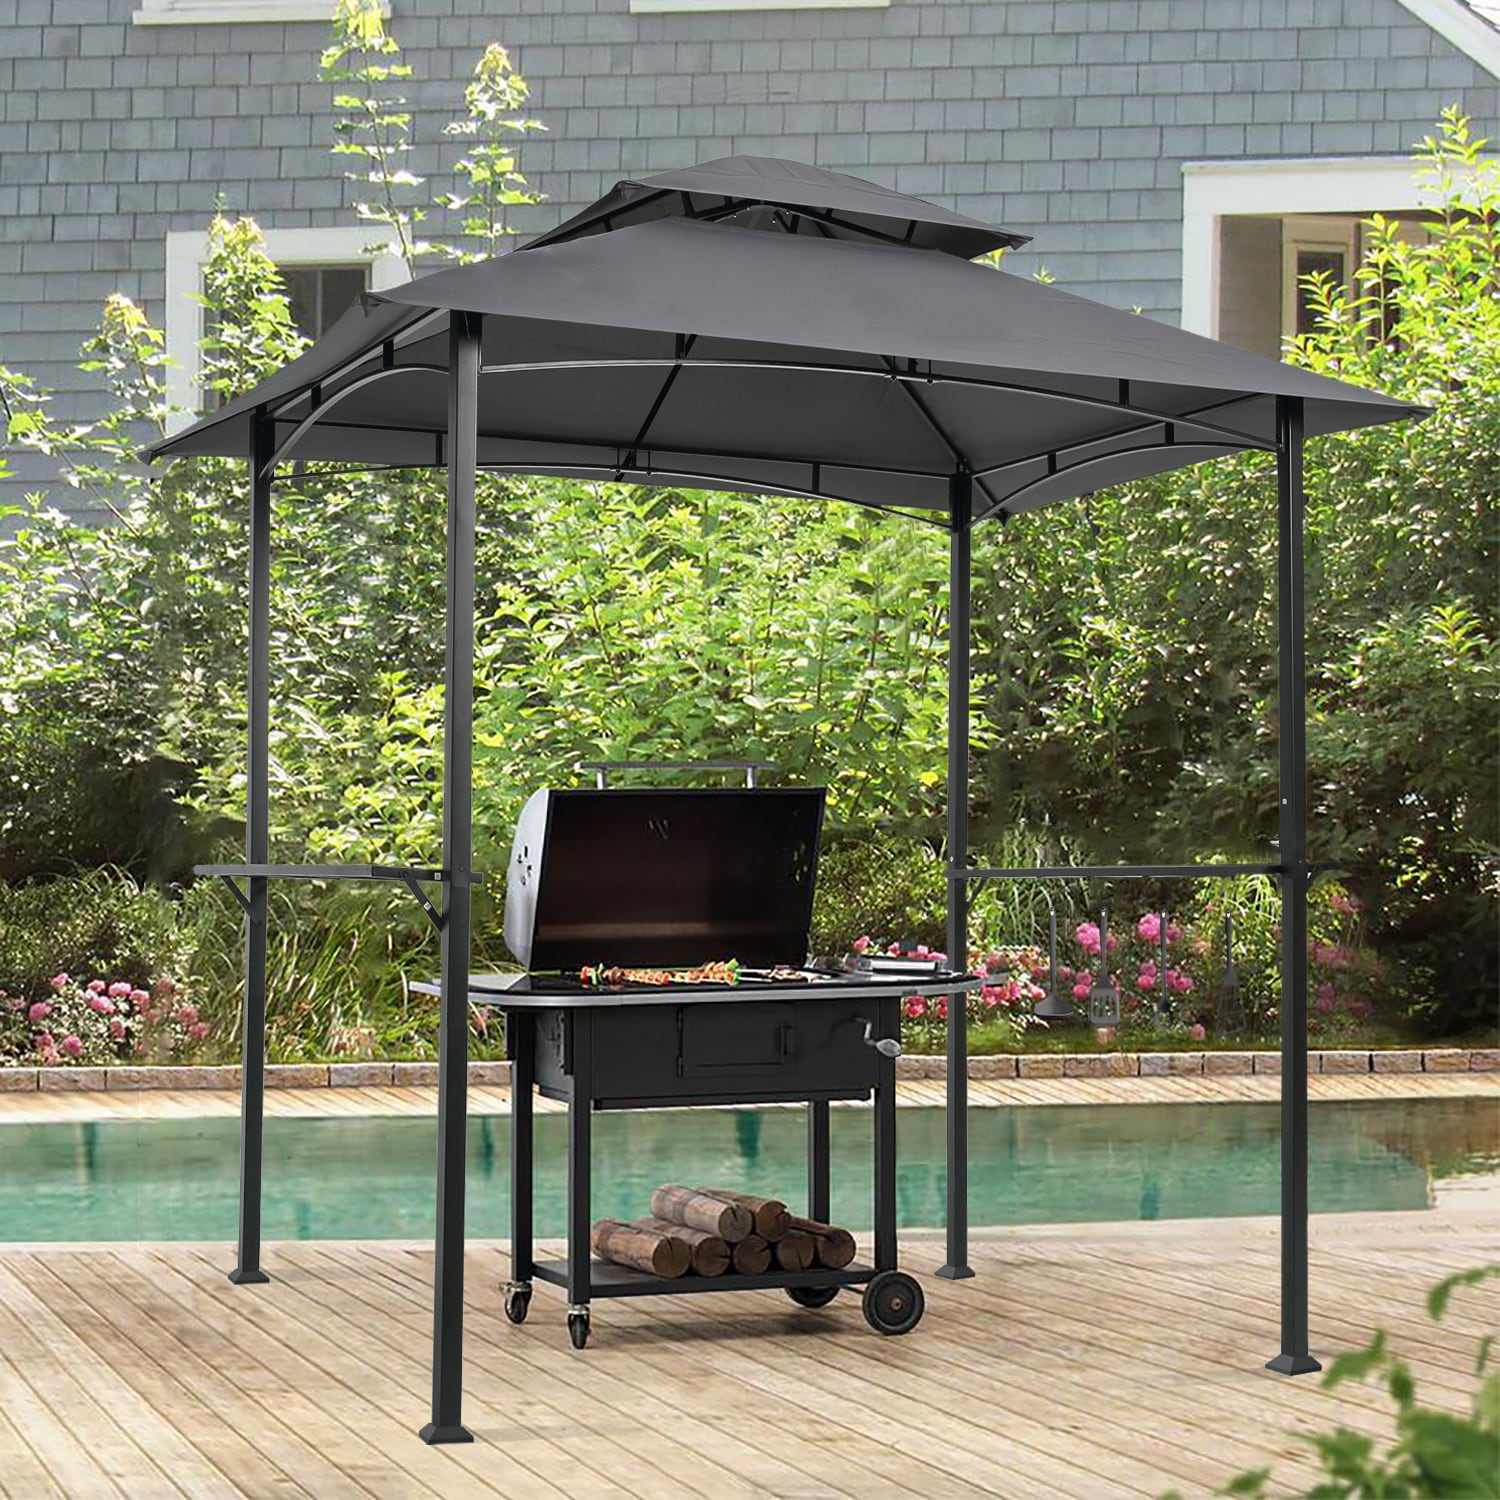 New Gazebo Canopy bbq gazebo Outdoor patio Party tent grill gazebo Garden Top 